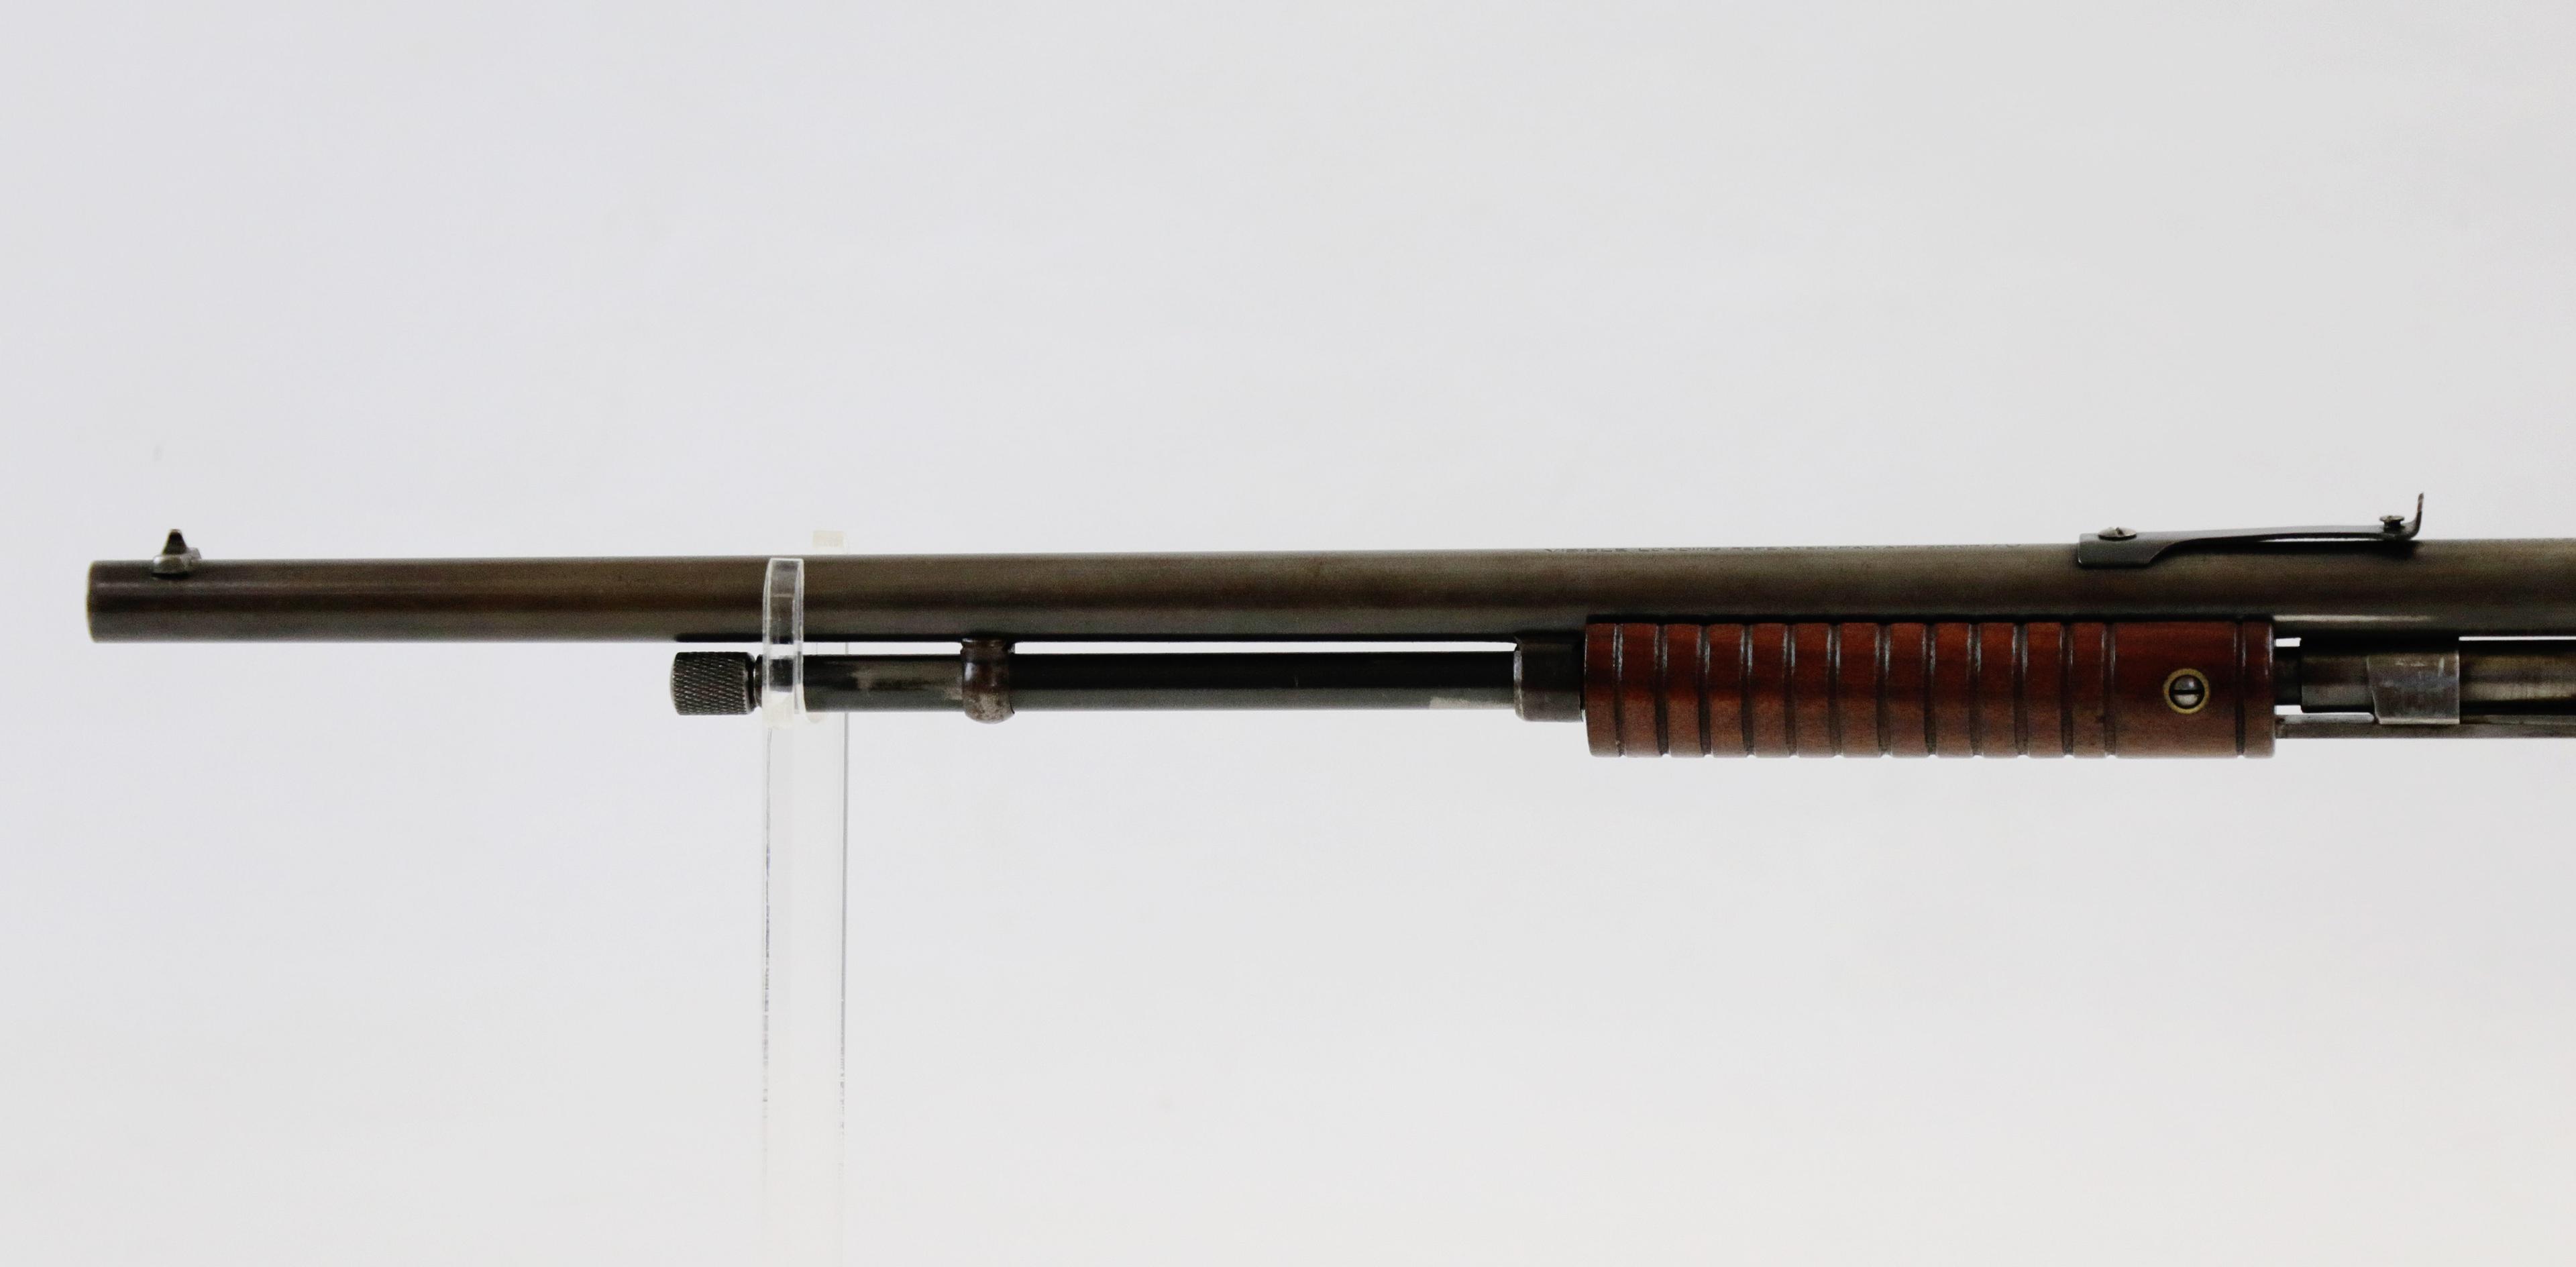 J Stevens M70 .22 LR pump rifle